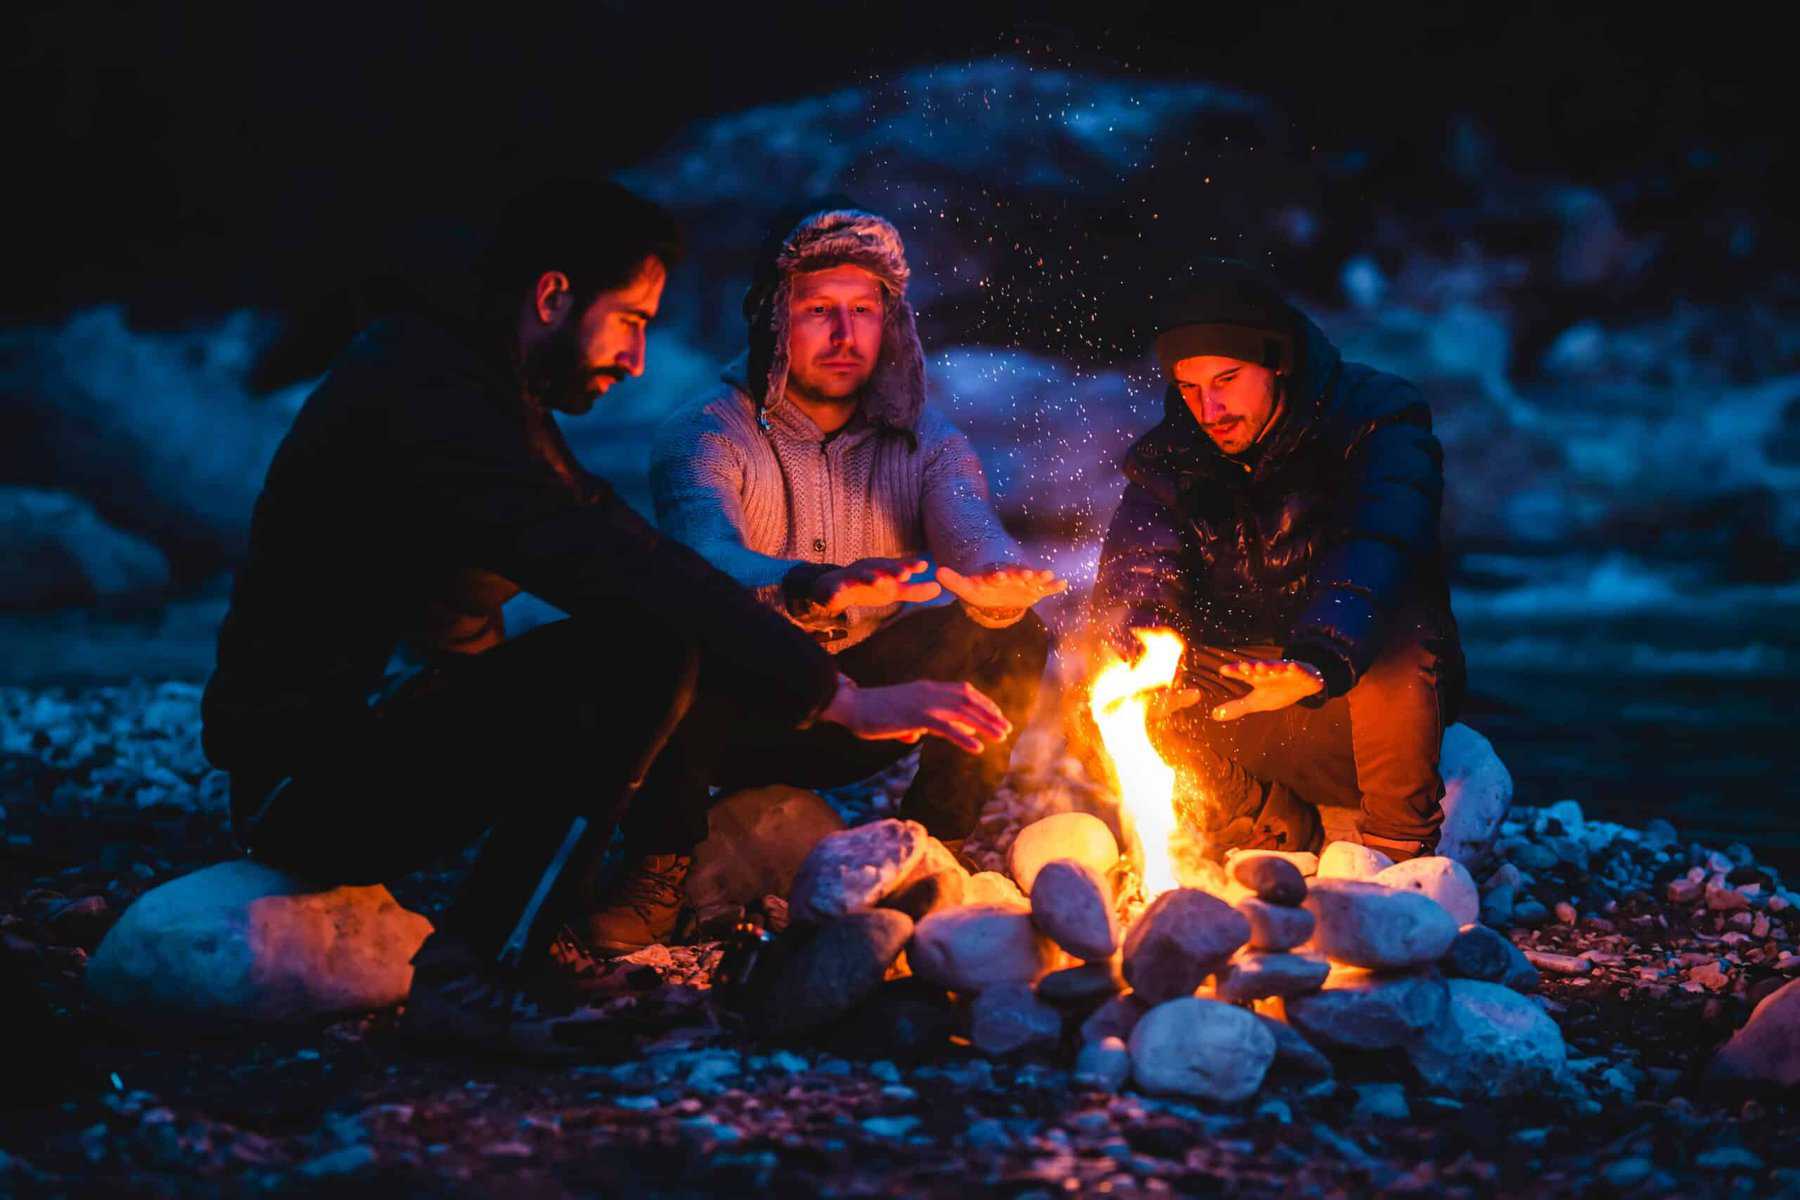 RV friends around campfire